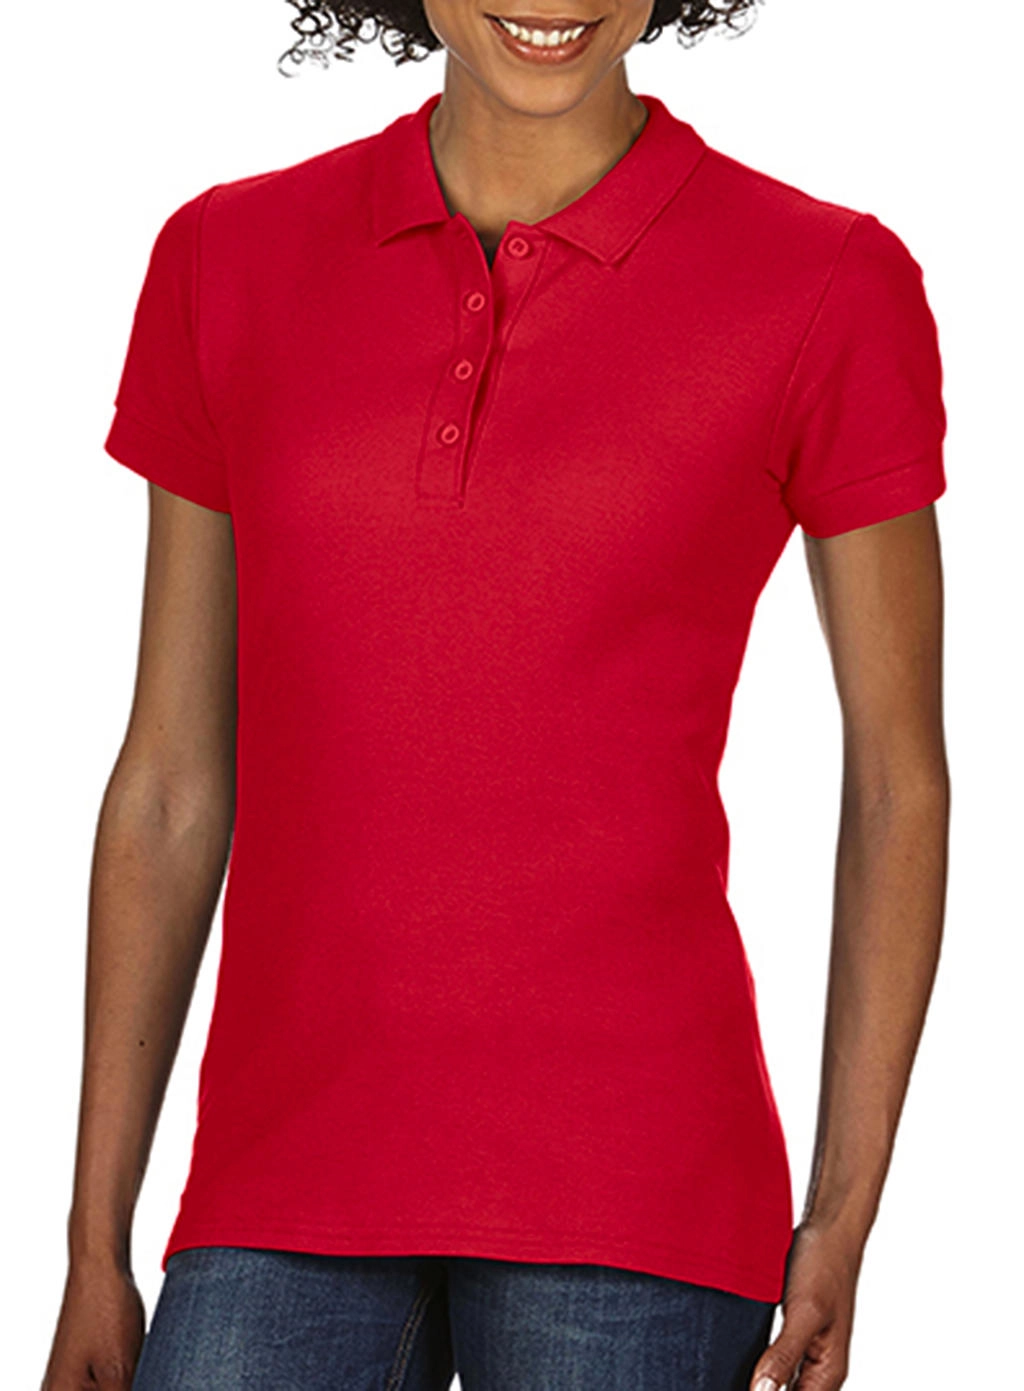 Softstyle® Ladies Double Pique Polo zum Besticken und Bedrucken in der Farbe Red mit Ihren Logo, Schriftzug oder Motiv.